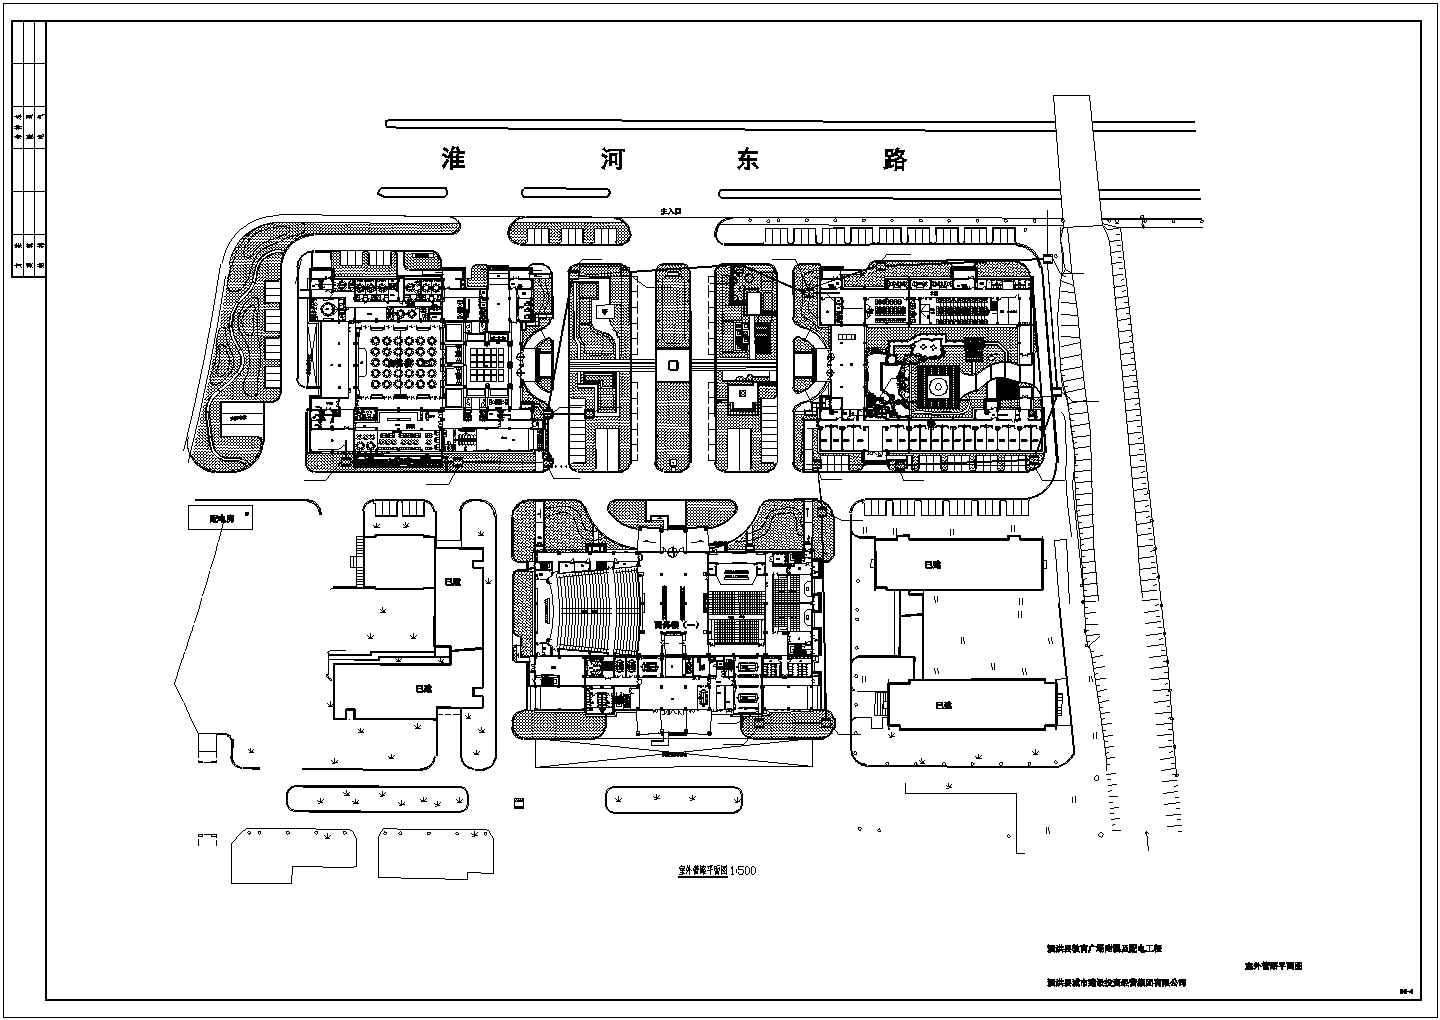 泗洪教育室外广场监控和管路图电气图设计